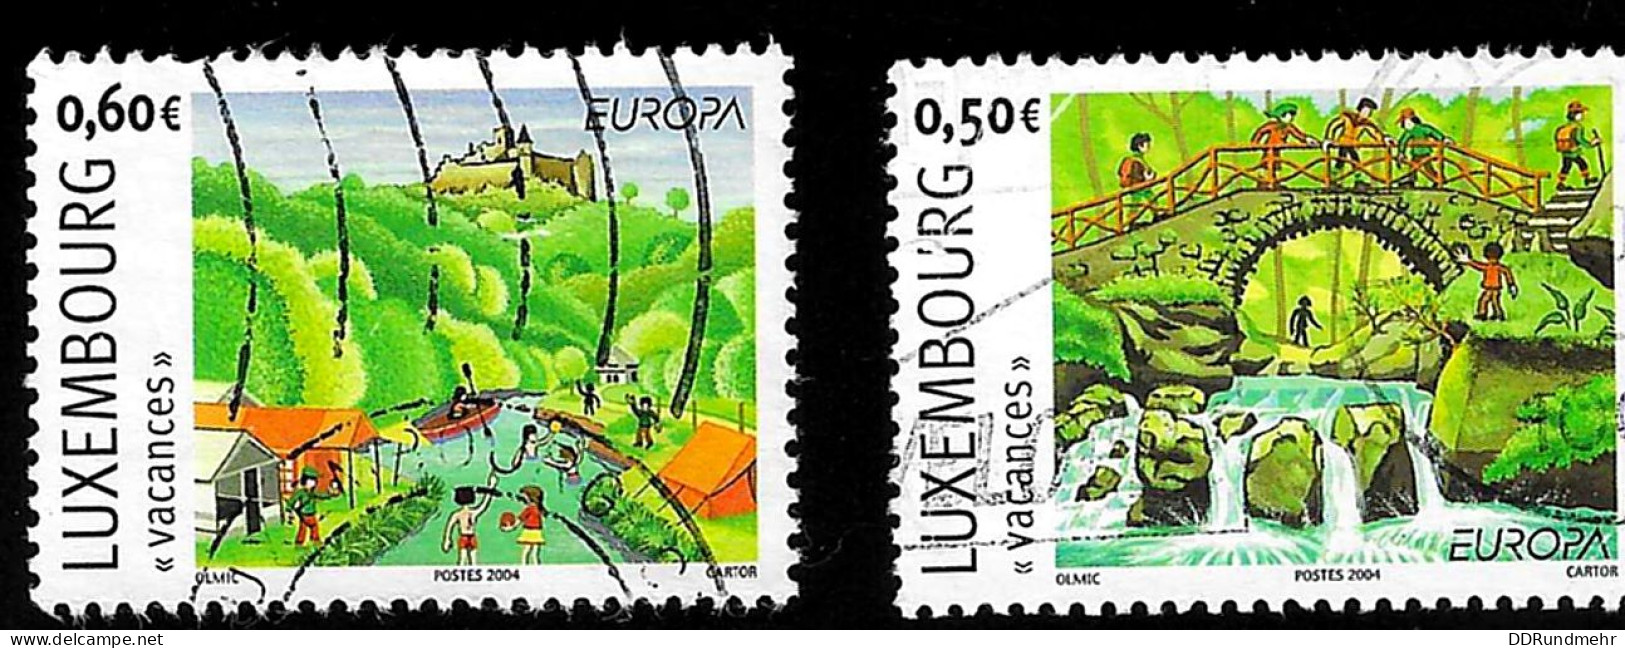 2004 Europa Michel LU 1640 - 1641 Stamp Number LU 1143 - 1144 Yvert Et Tellier LU 1590 - 1591 Used - Used Stamps